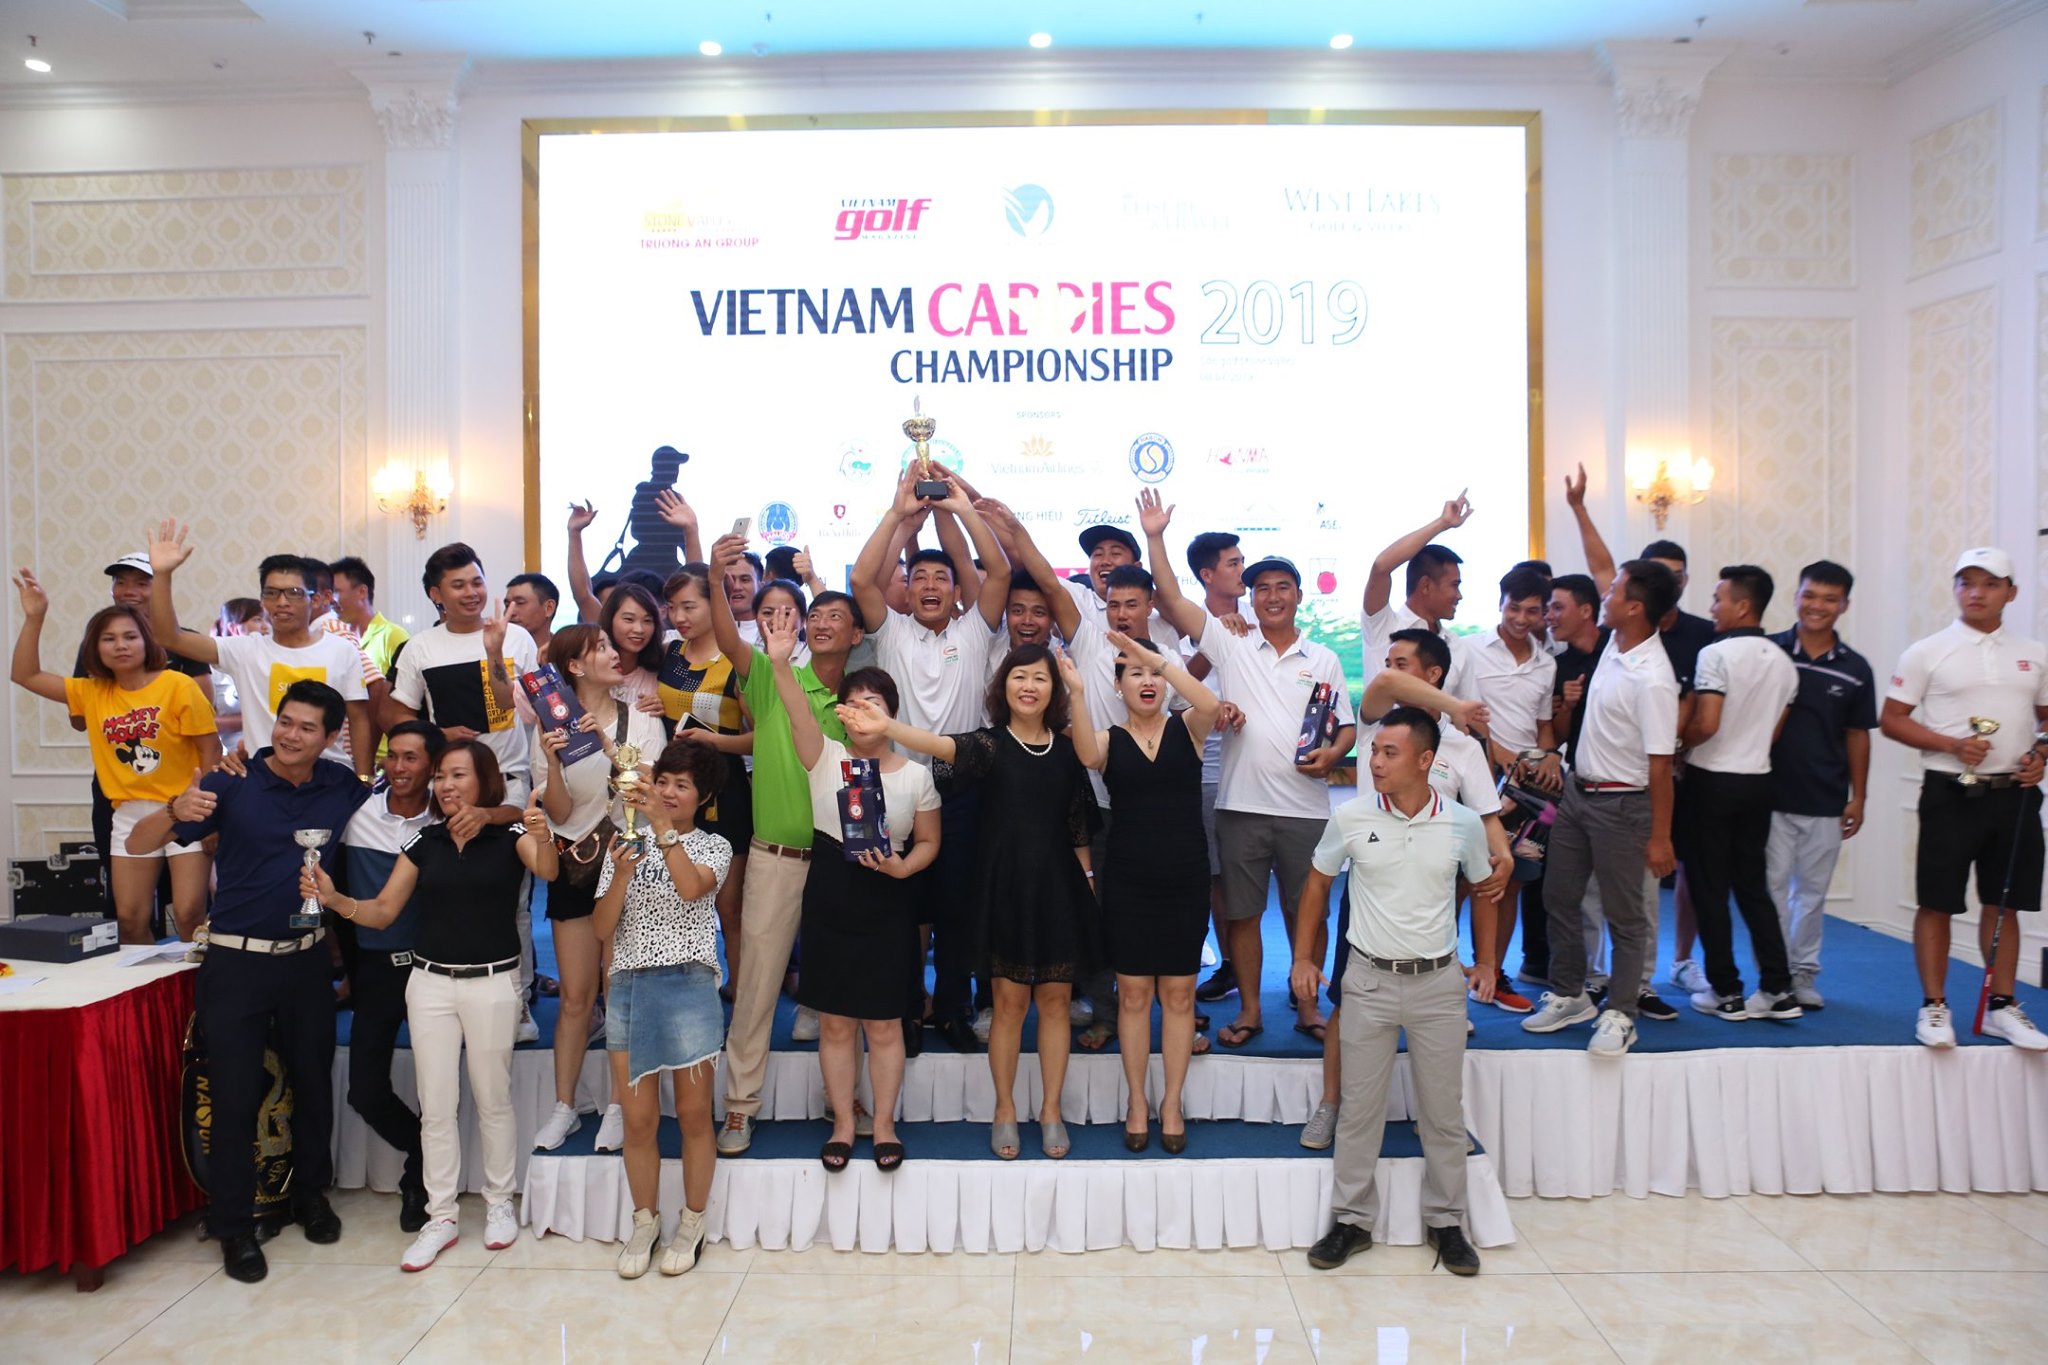 Khép lại thành công giải VIETNAM CADDIES CHAMPIONSHIP 2019 miền Bắc